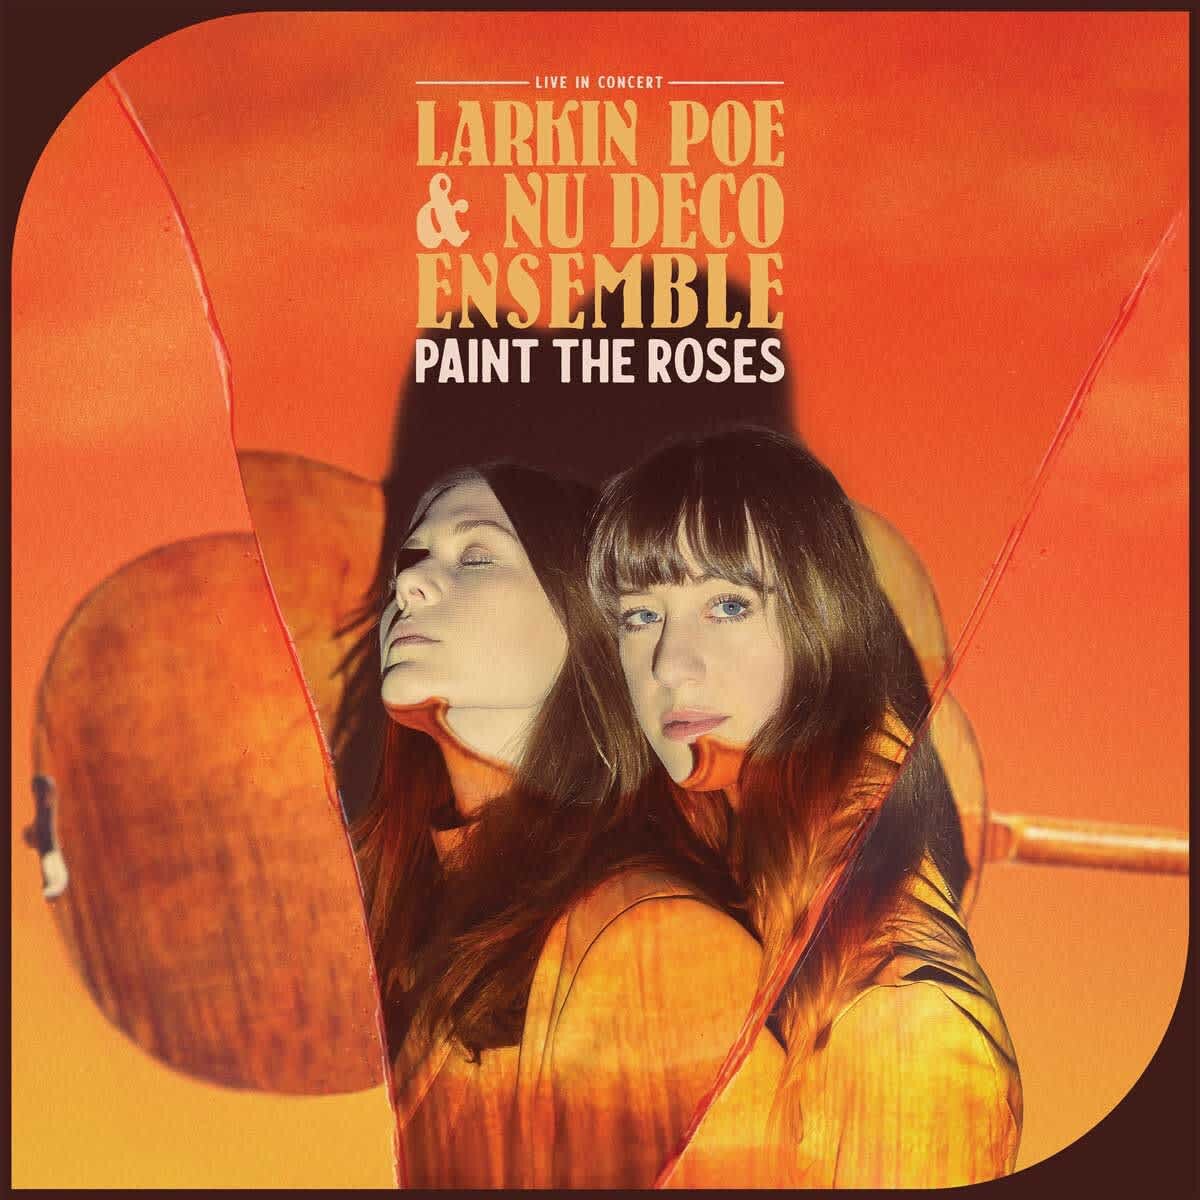 Larkin Poe & Nu Deco Ensemble - Paint the Roses (Live In Concert)